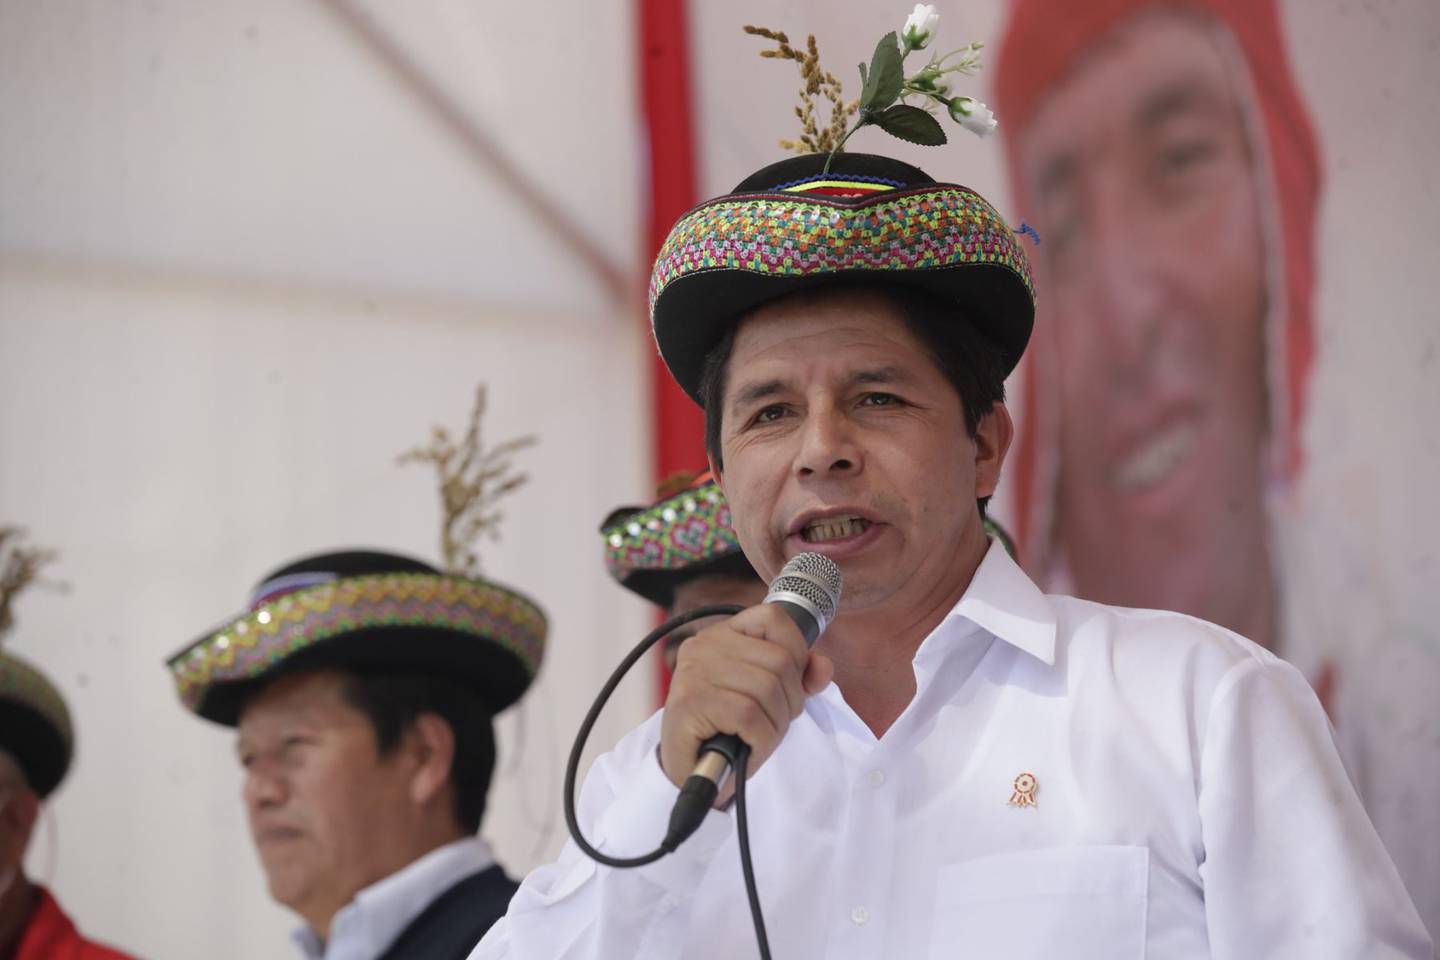 Los congresistas peruanos esperan que el presidente, en su Mensaje a la Nación el jueves 28 de julio, hable sobre las investigaciones en su contra.dfd